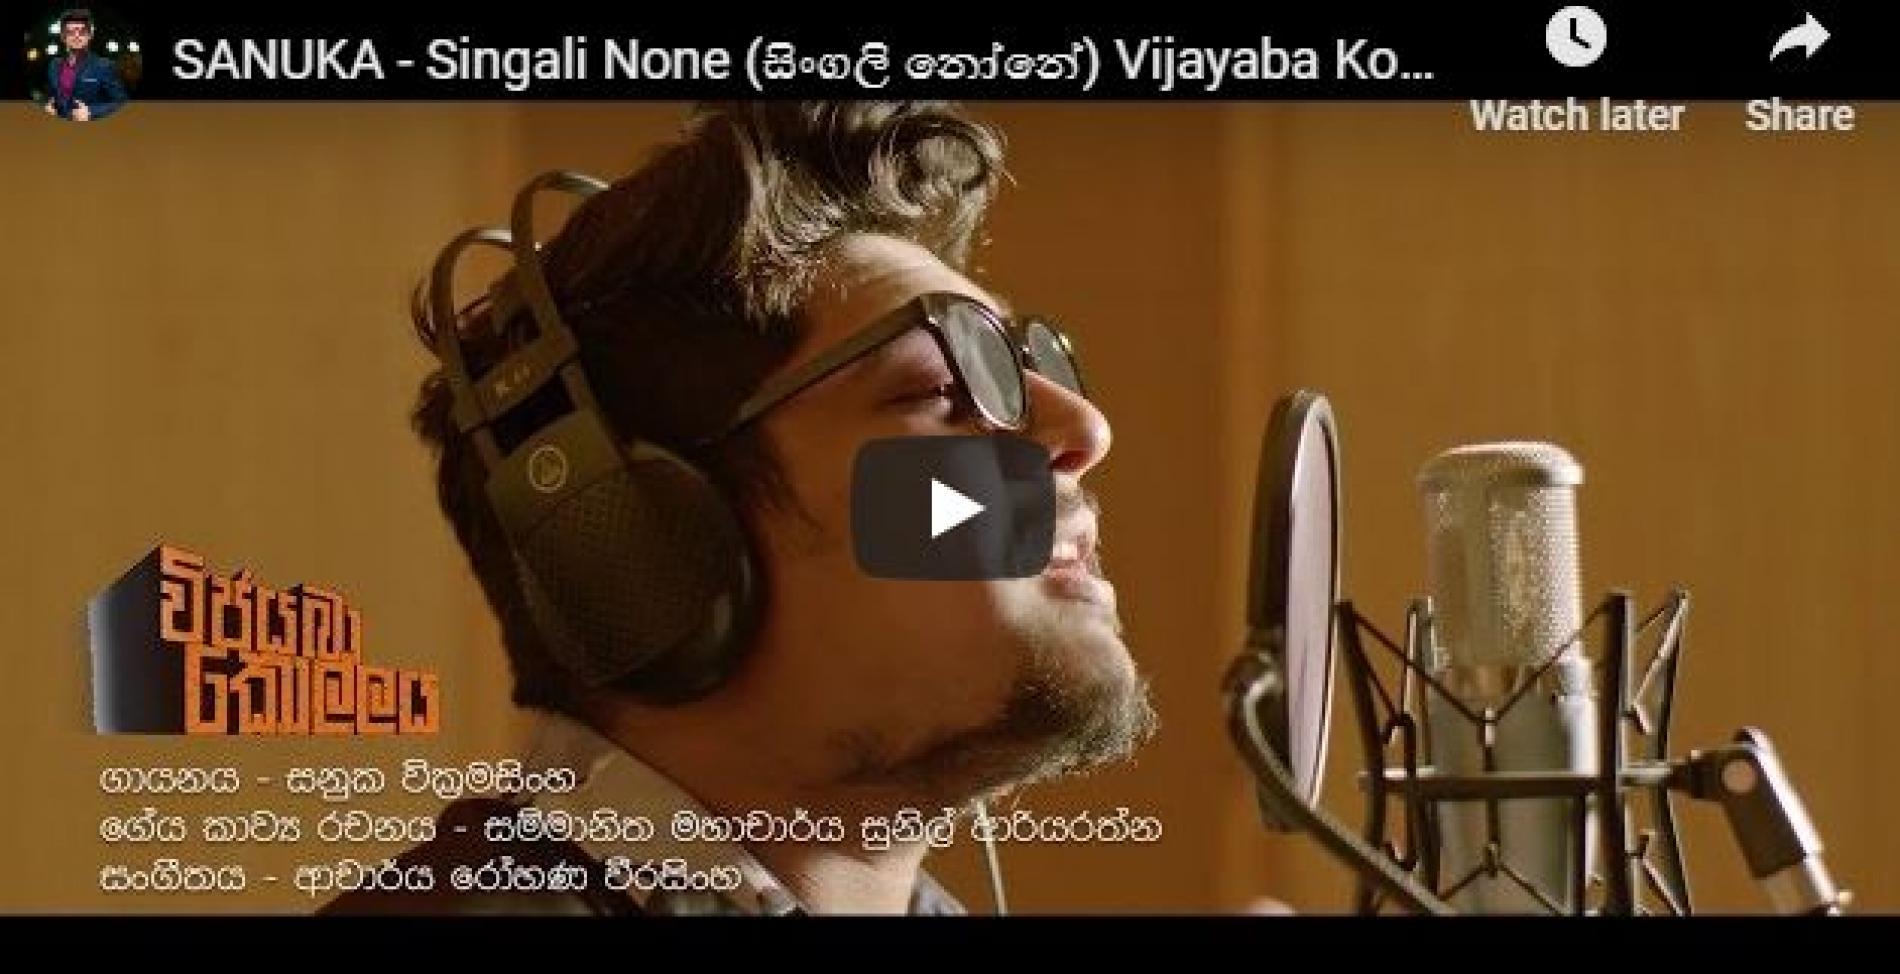 SANUKA – Singali None (සිංගලි නෝනේ) Vijayaba Kollaya Film Song | විජයබා කොල්ලය චිත්‍රපට ගීතය